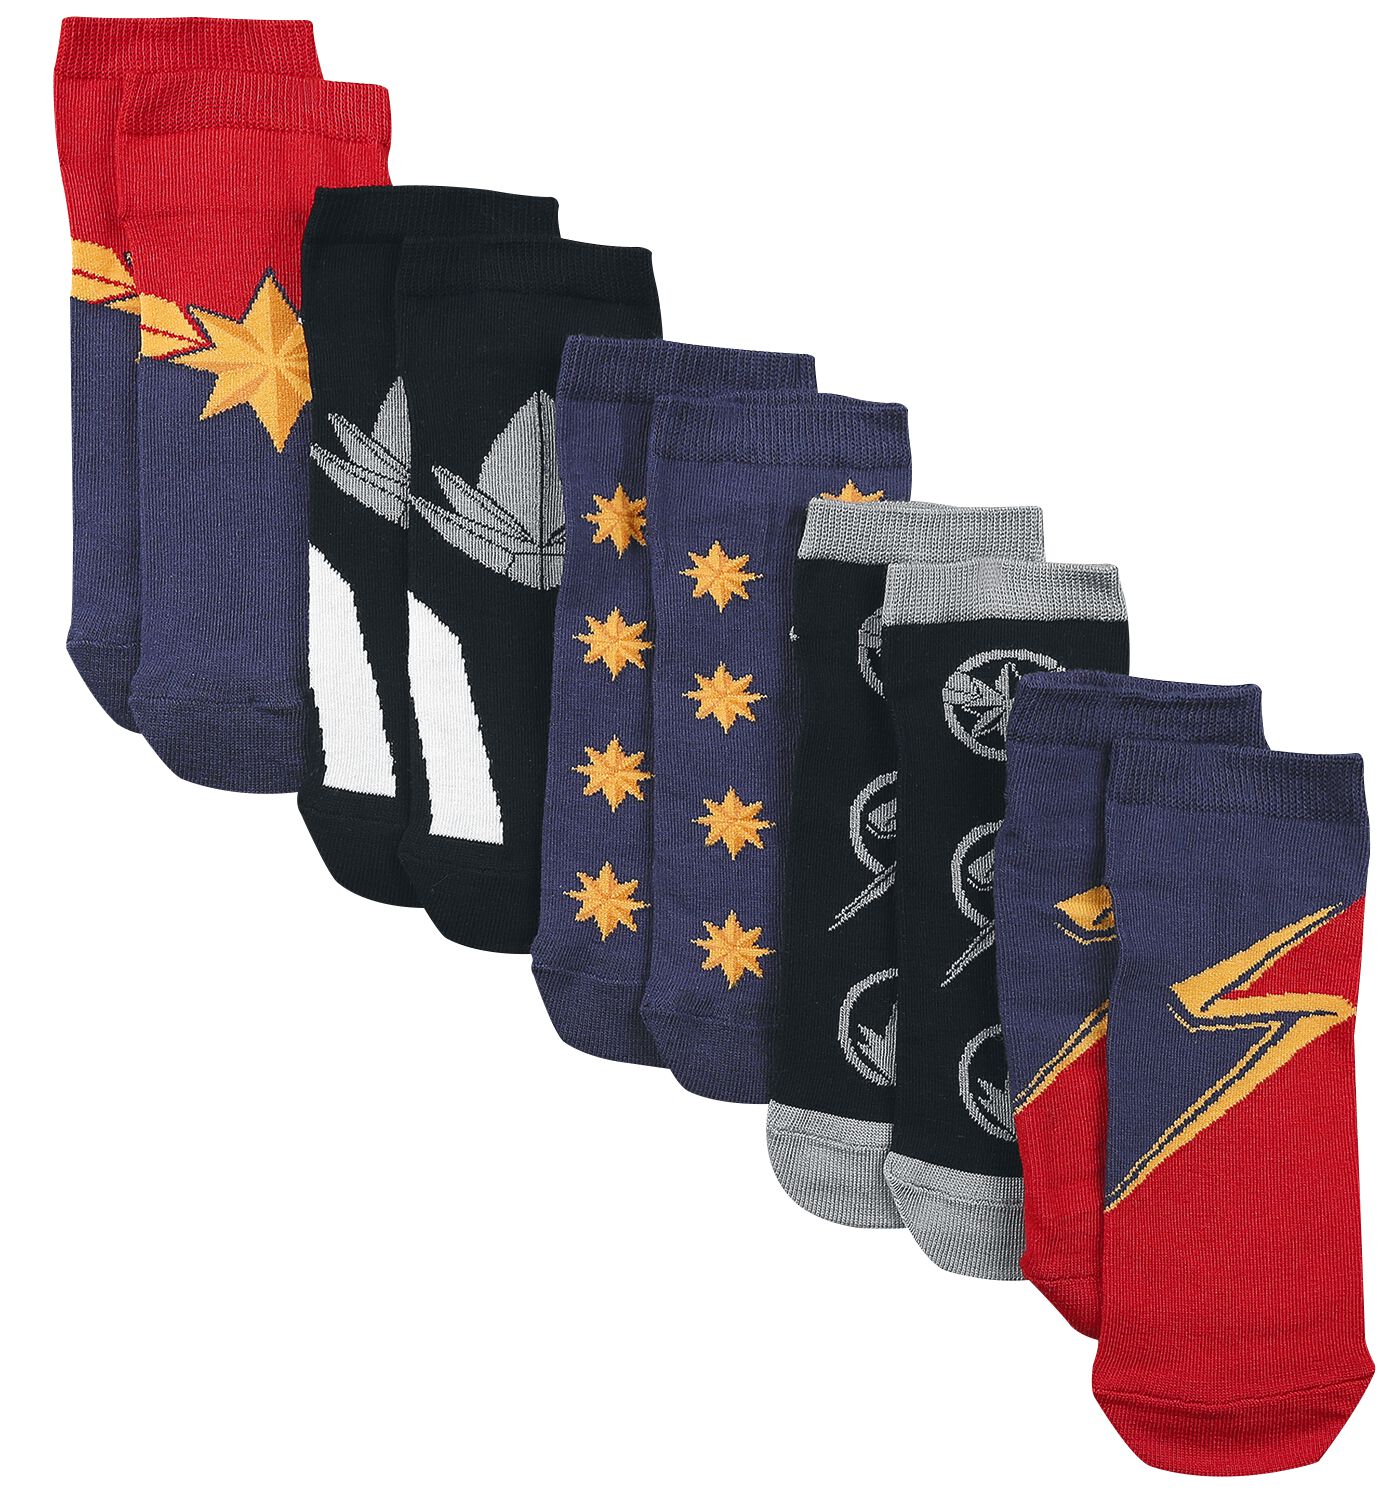 The Marvels - Marvel Socken - EU35-38 bis EU39-42 - für Damen - Größe EU 39-42 - multicolor  - EMP exklusives Merchandise!